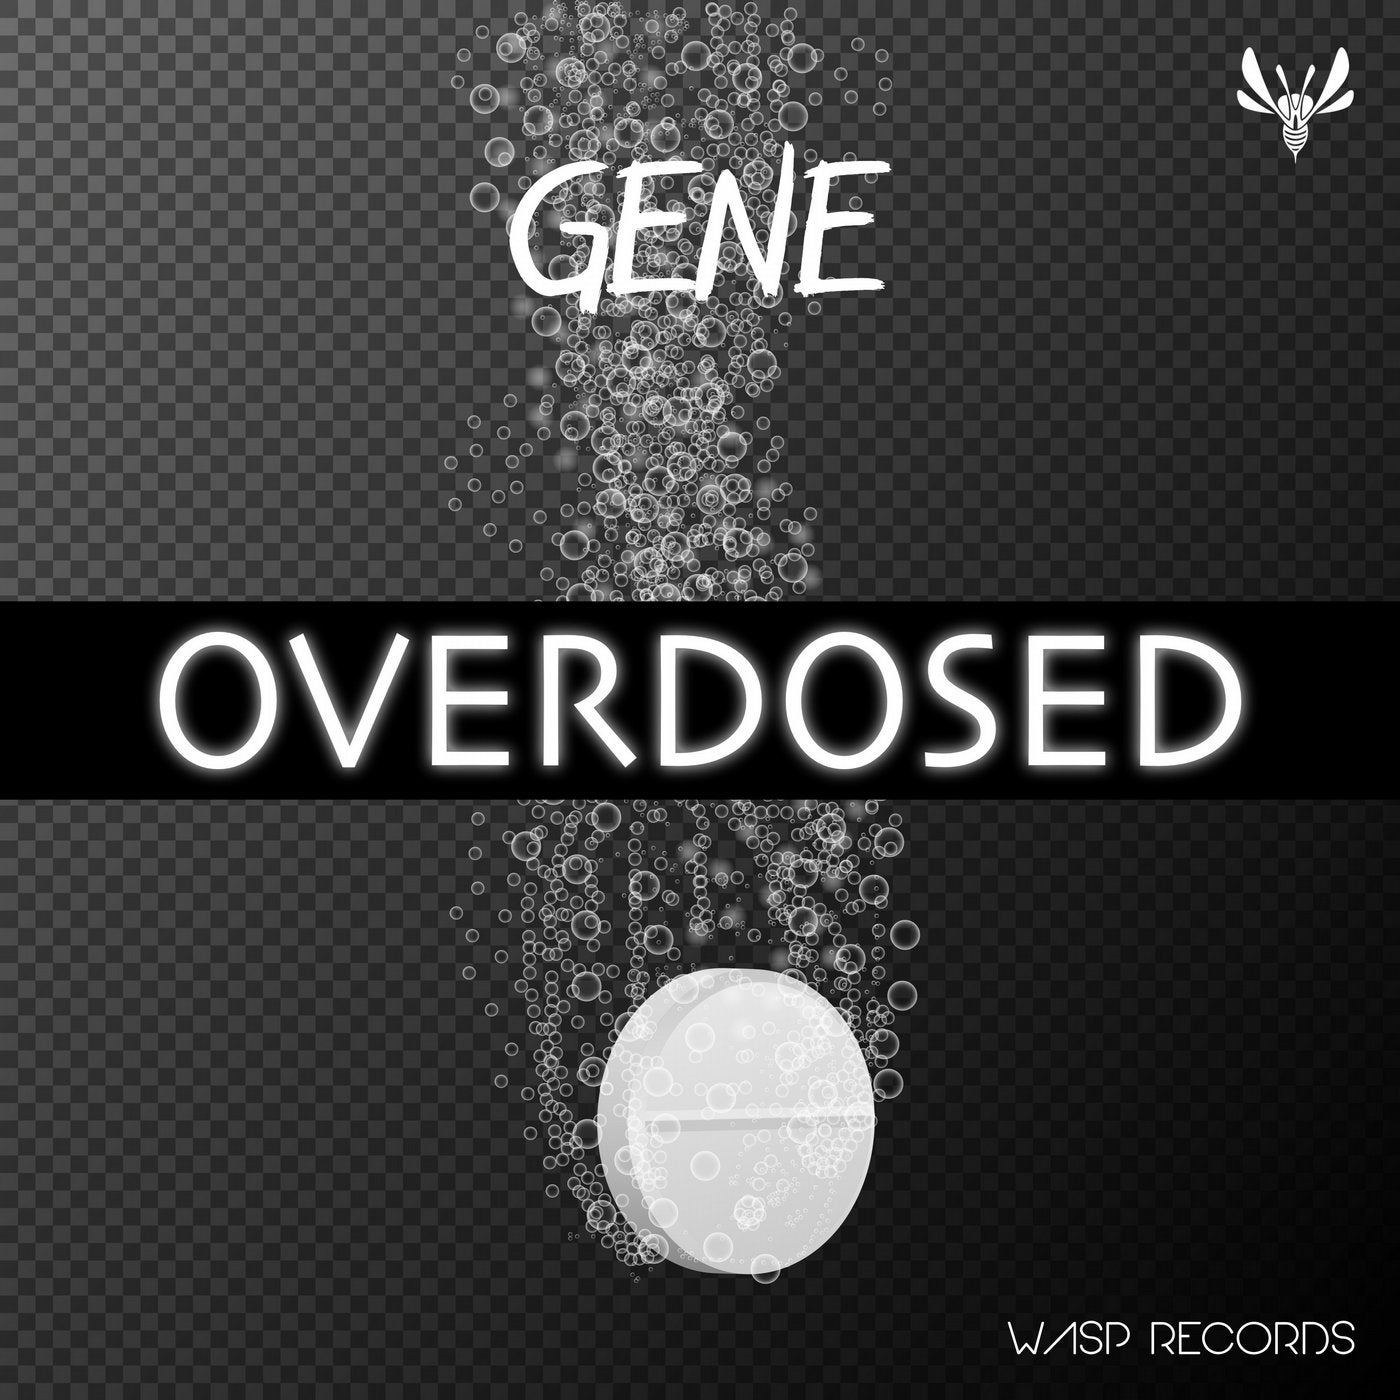 Overdosed